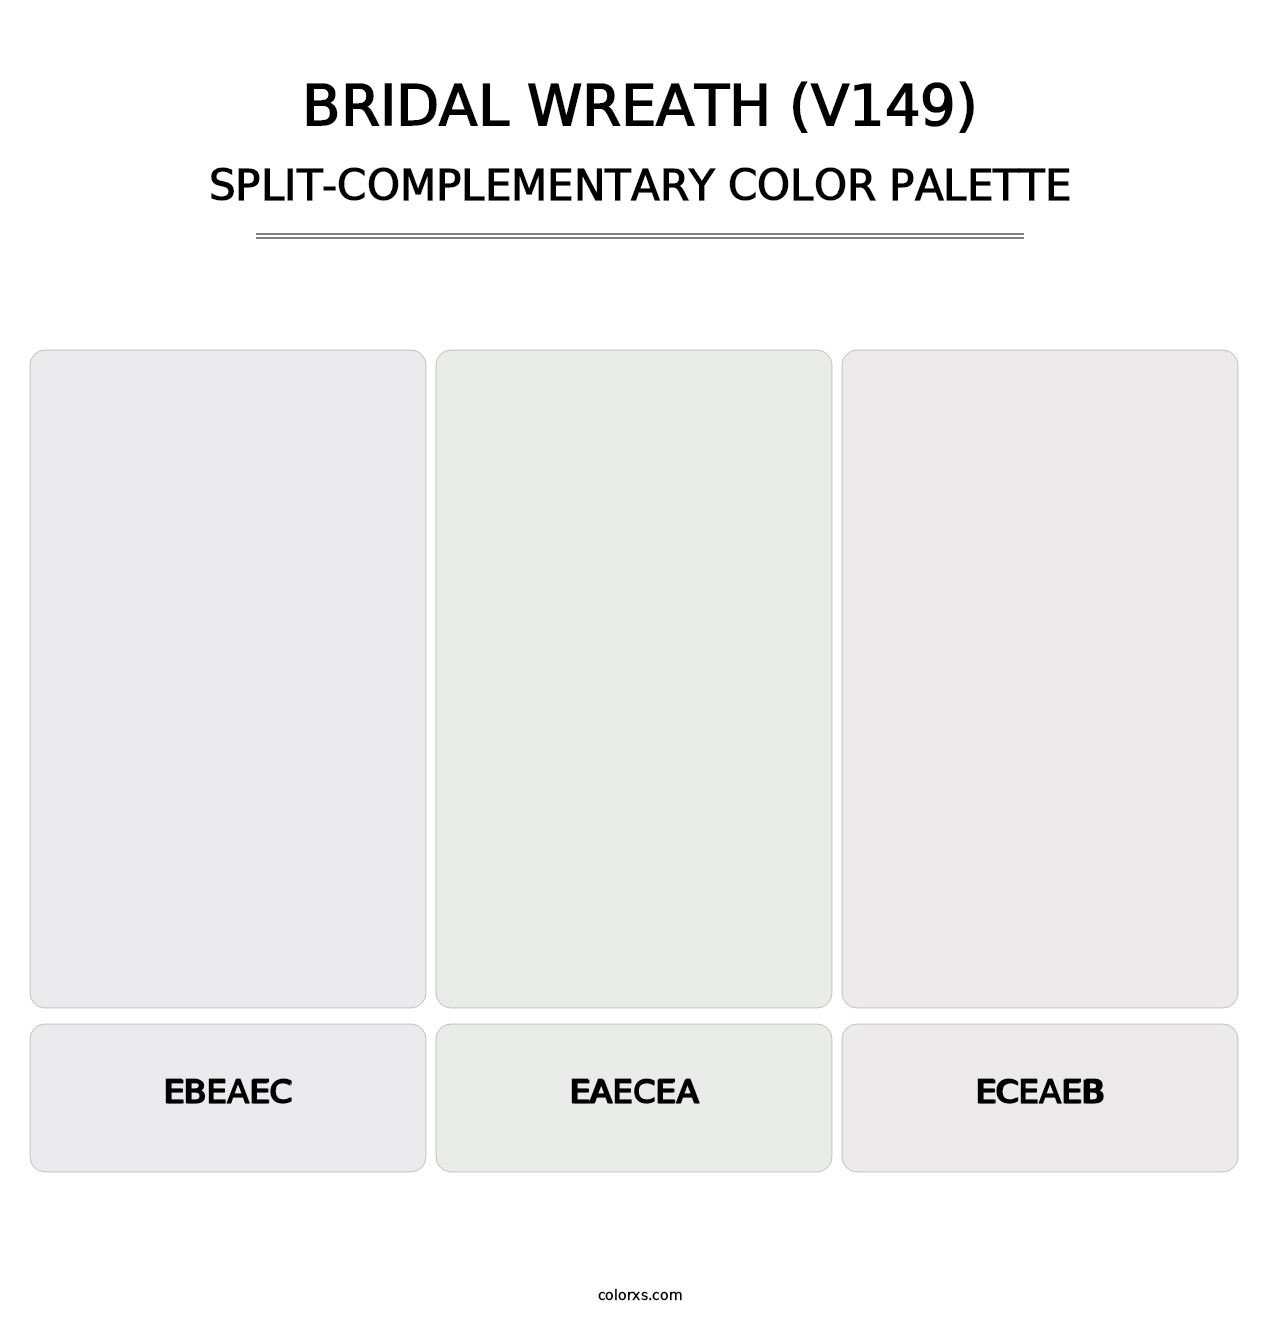 Bridal Wreath (V149) - Split-Complementary Color Palette